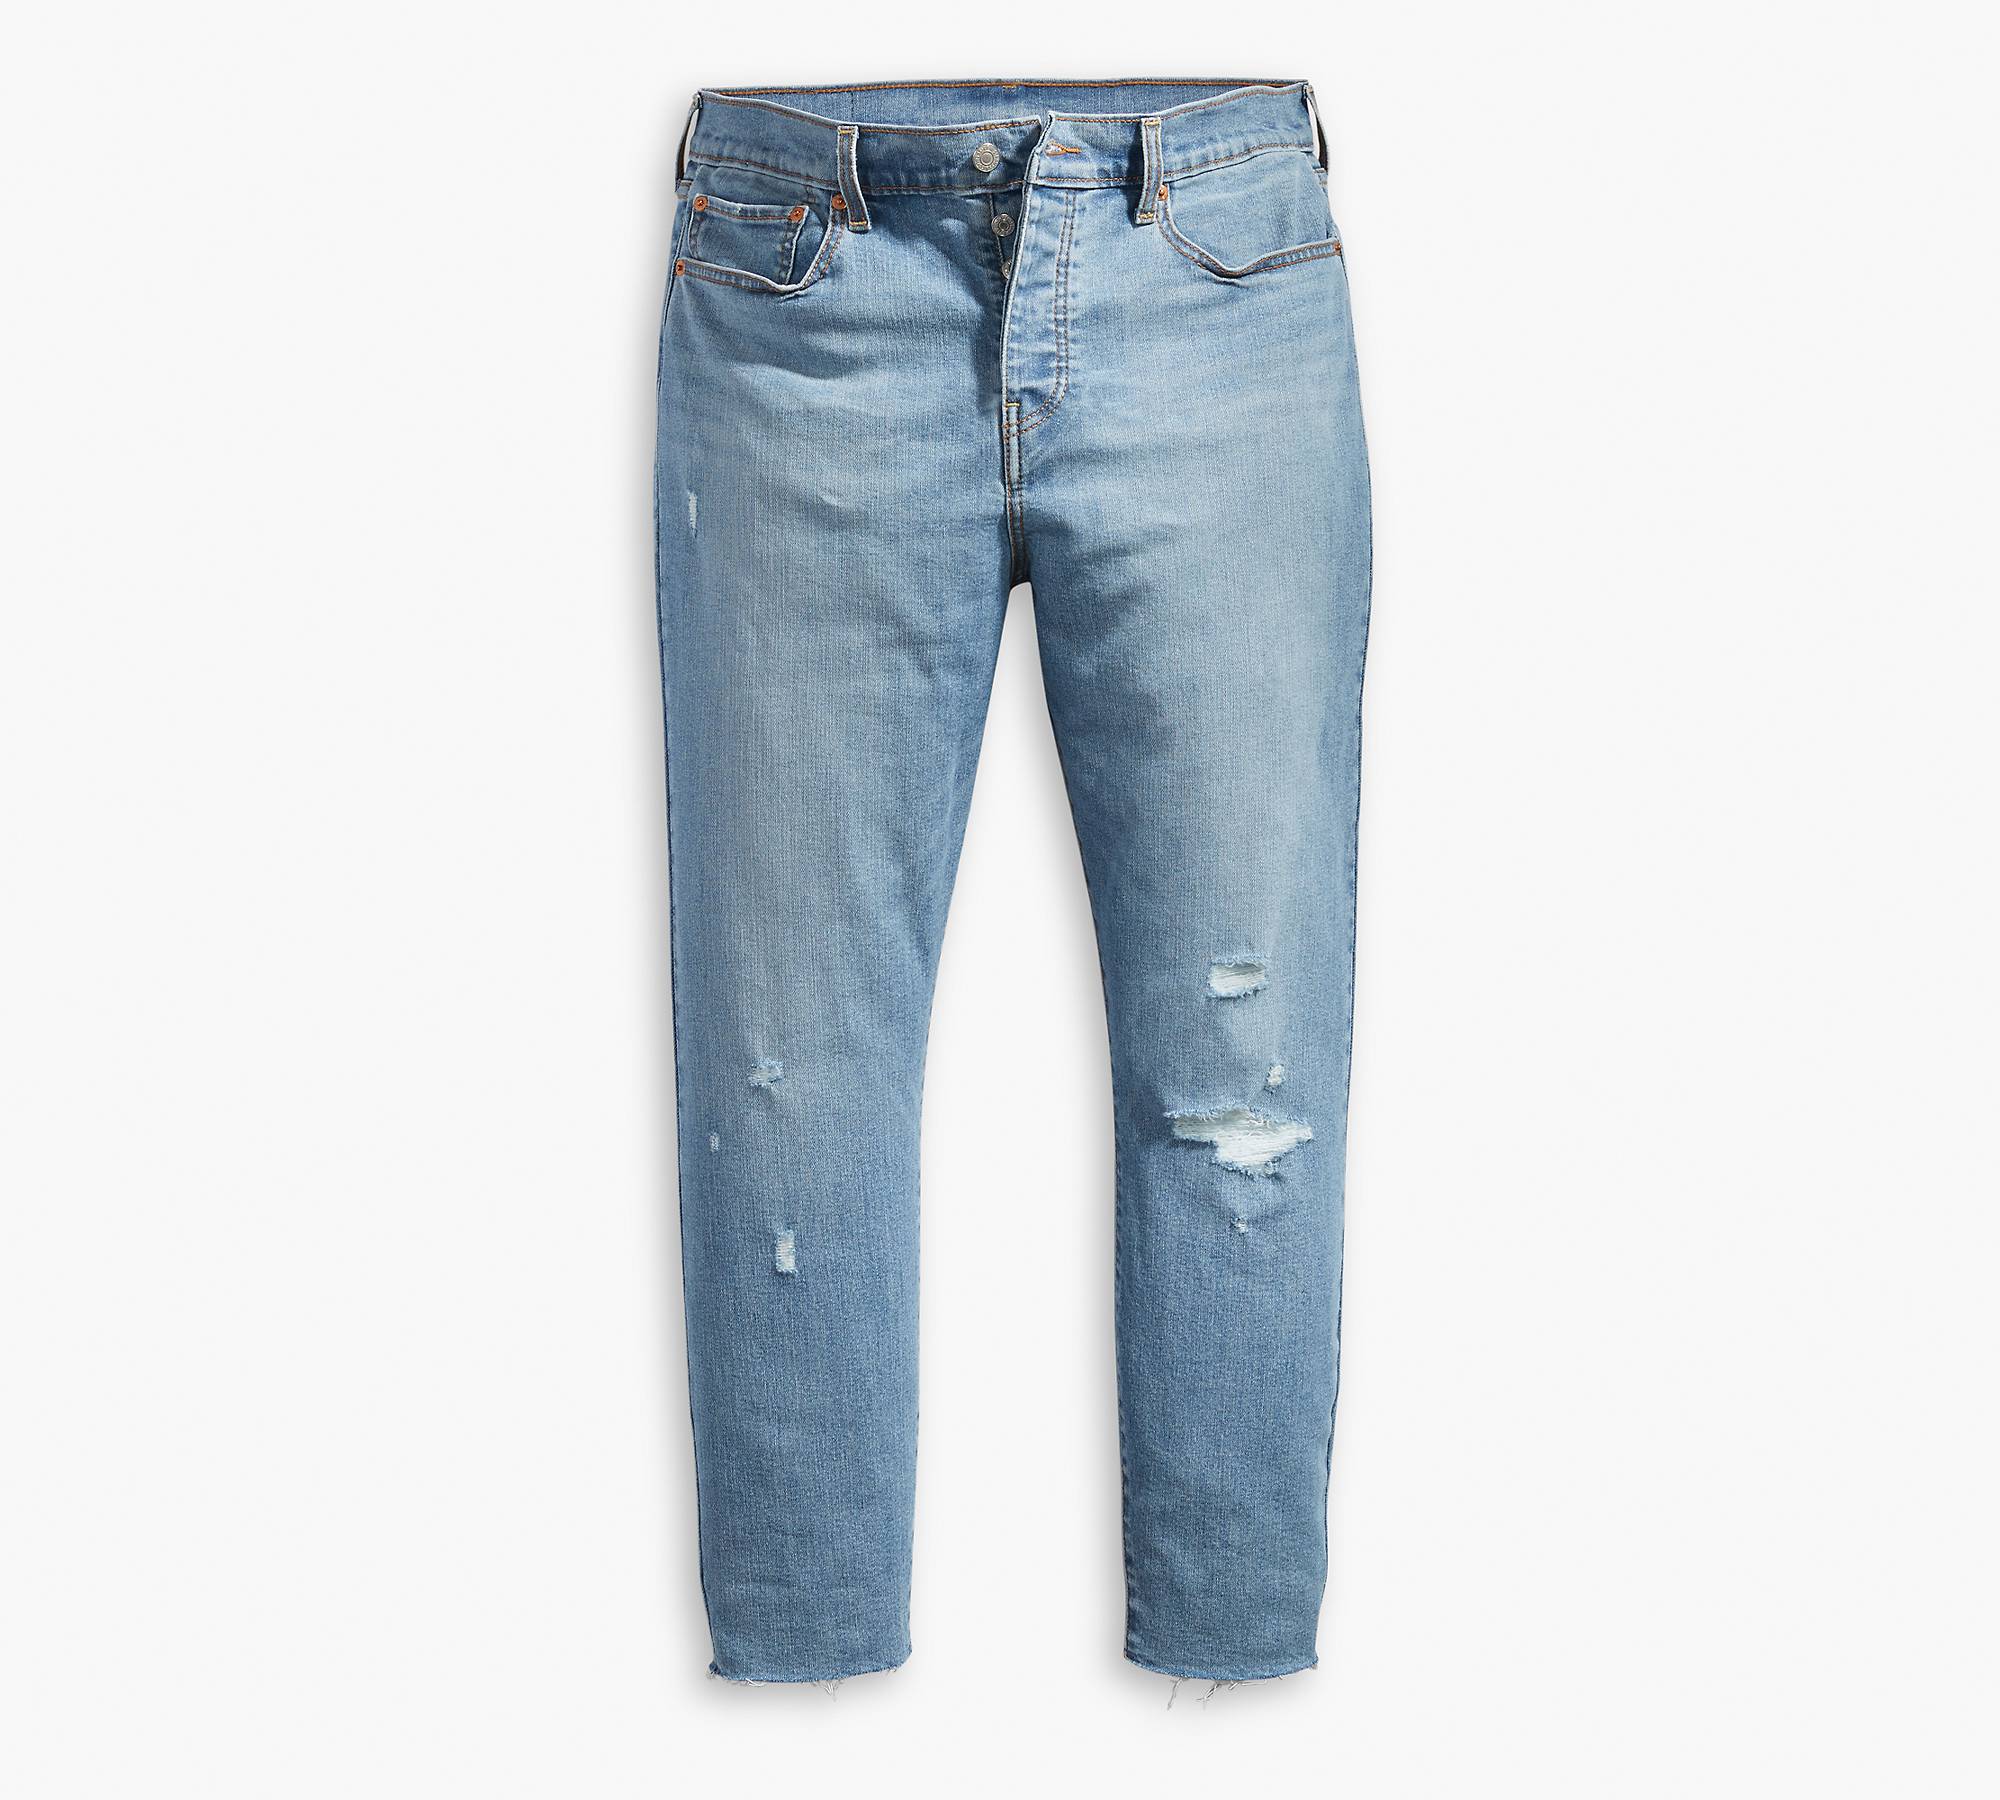 Wedgie Fit Women's Jeans (plus Size) - Medium Wash | Levi's® US